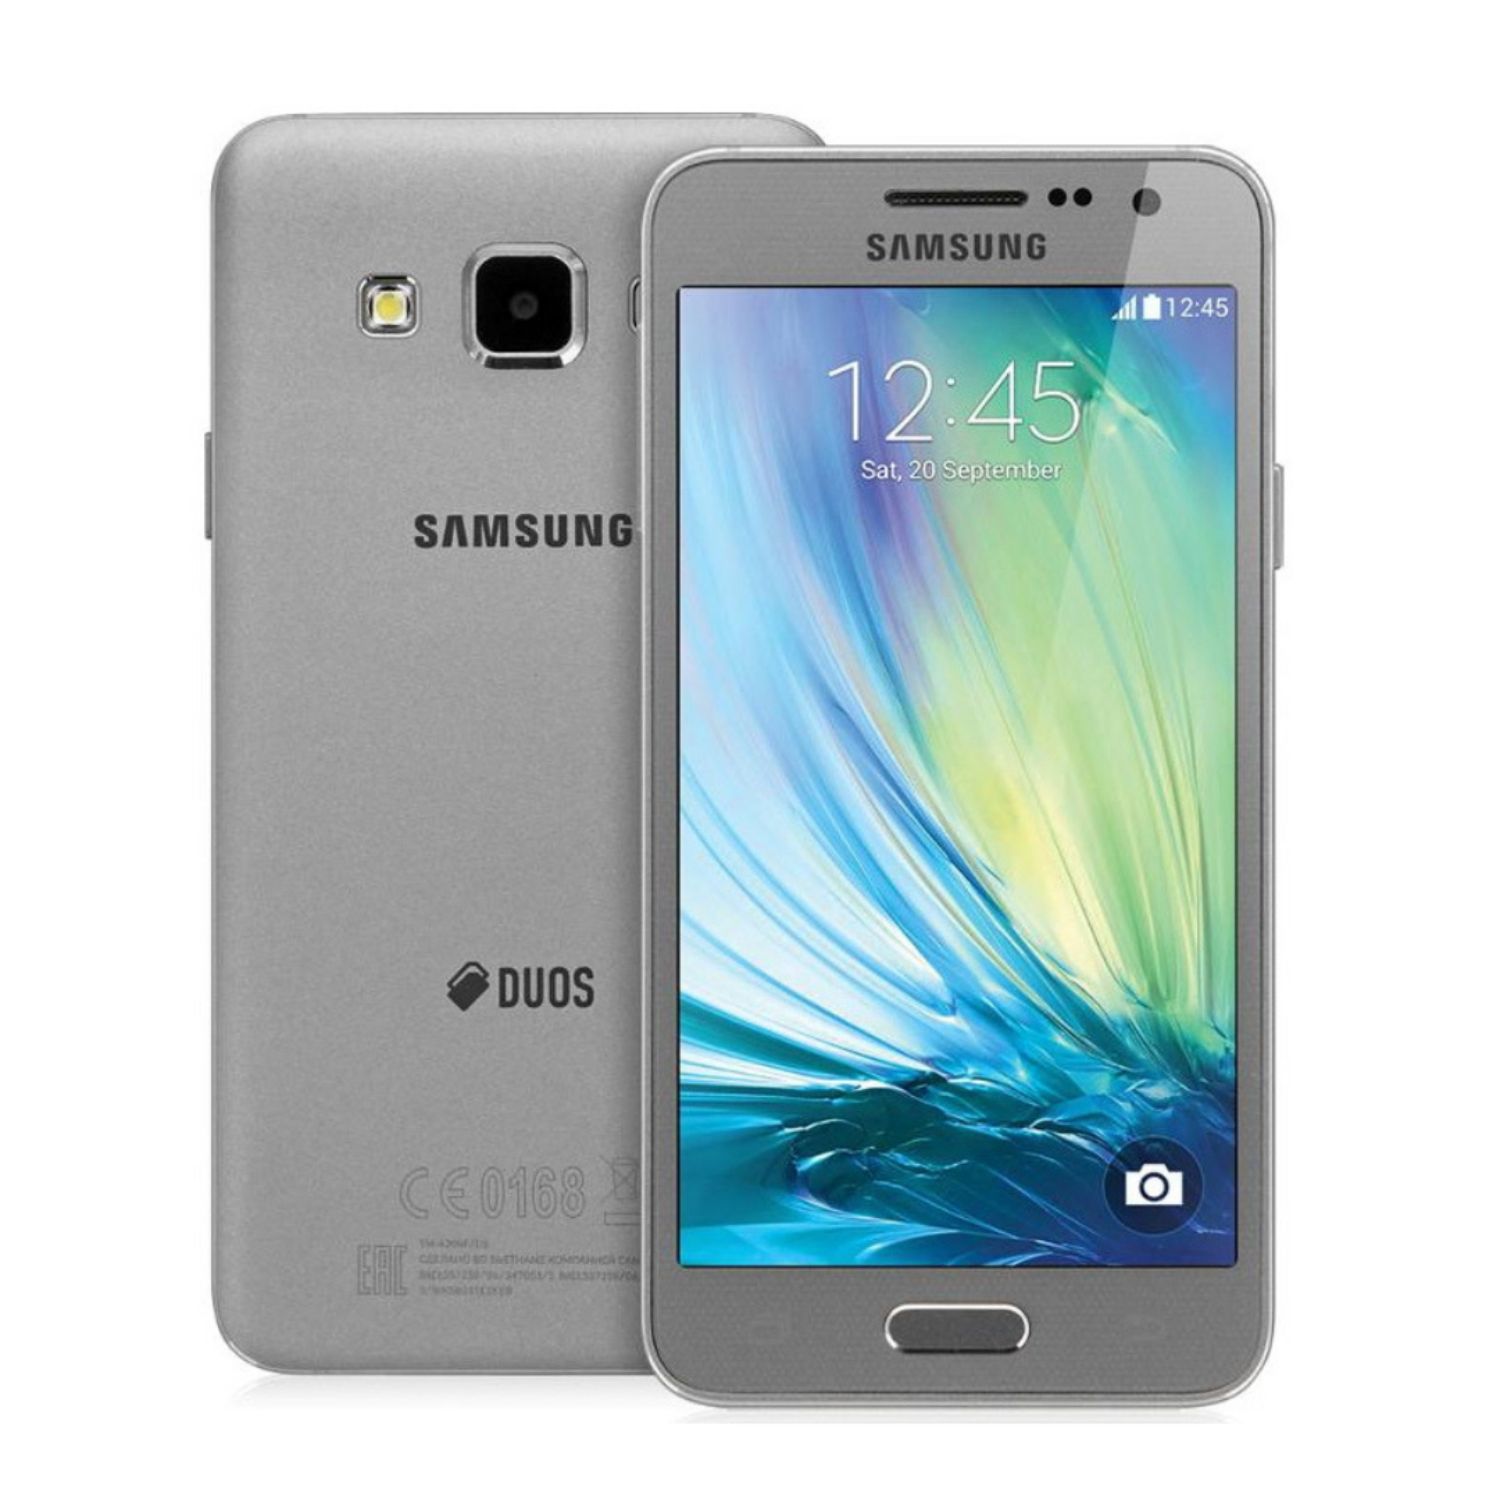 Самсунг а34 цена телефон. Samsung Galaxy a3. Samsung a300 Galaxy a3. Samsung a5 2014. Samsung a3 2015.